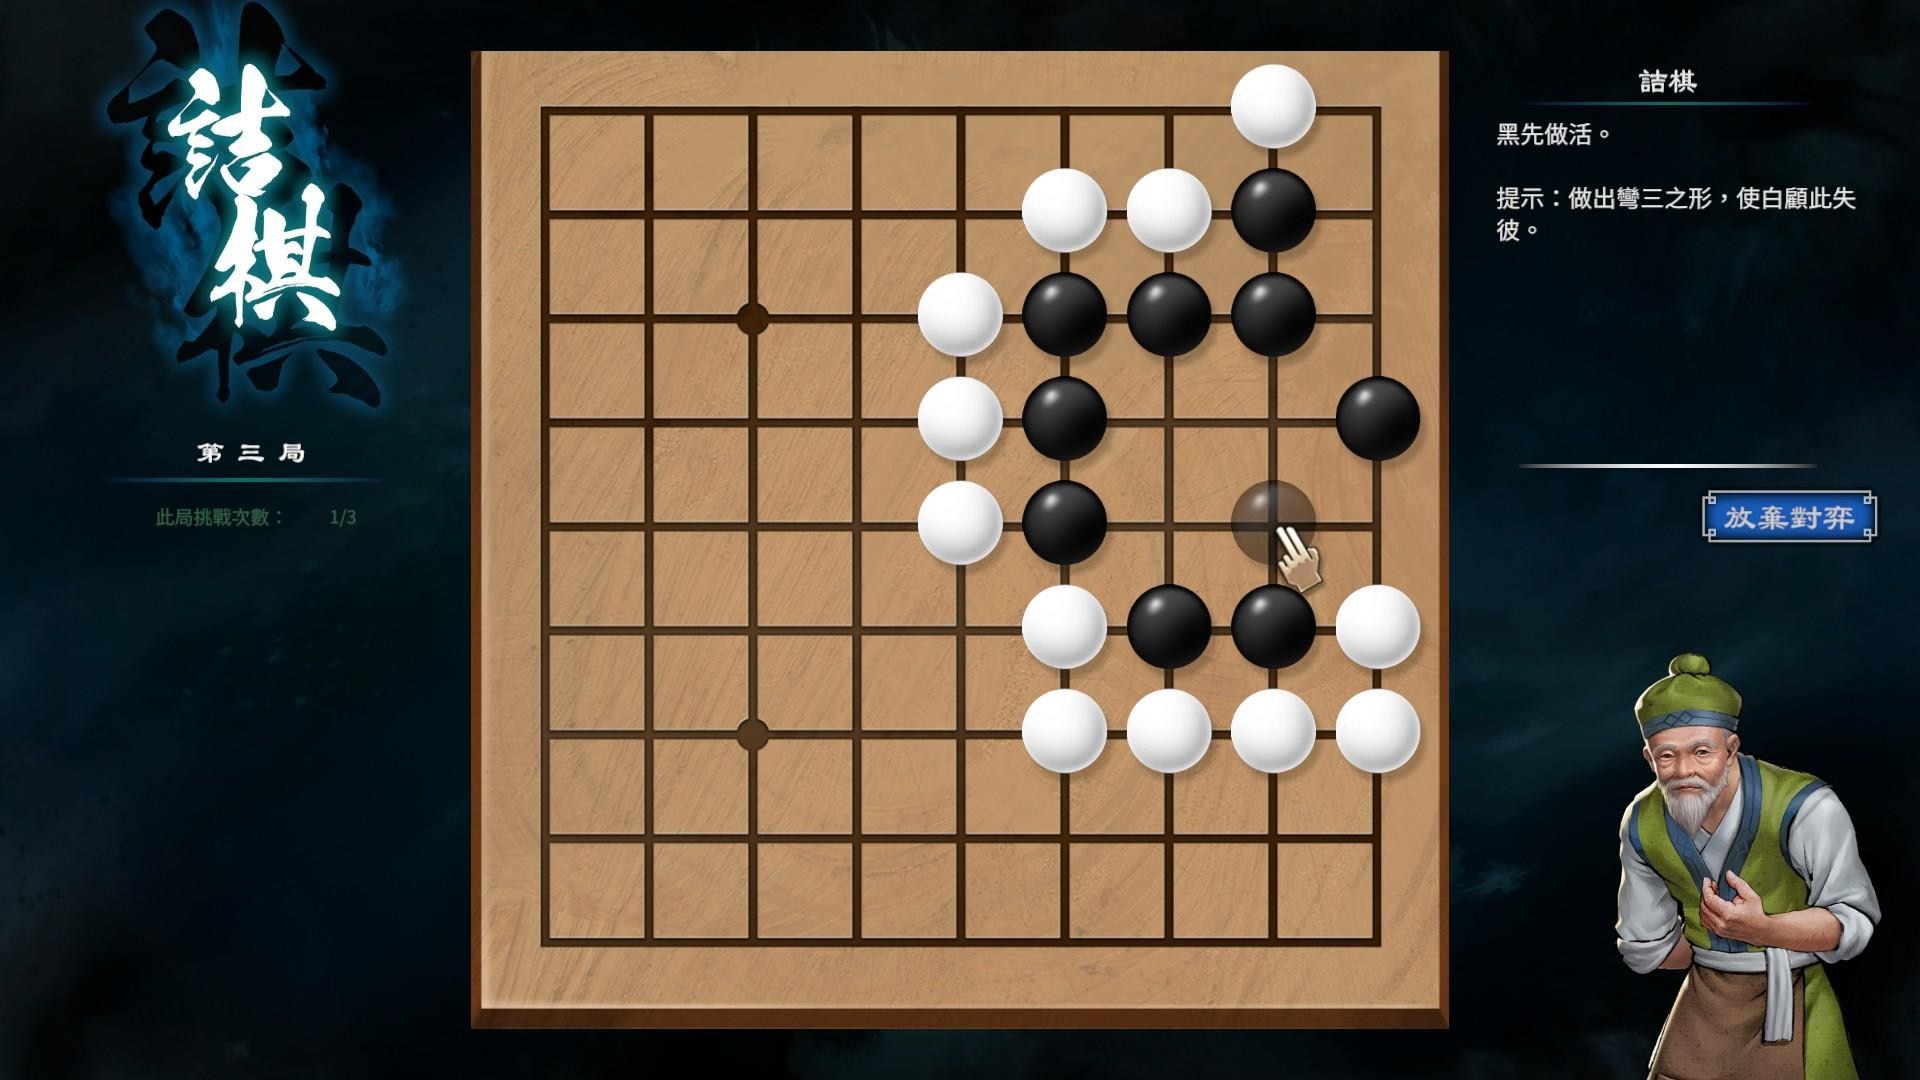 《天命奇御2》圍棋基本概念與棋型解法介紹 - 第12張